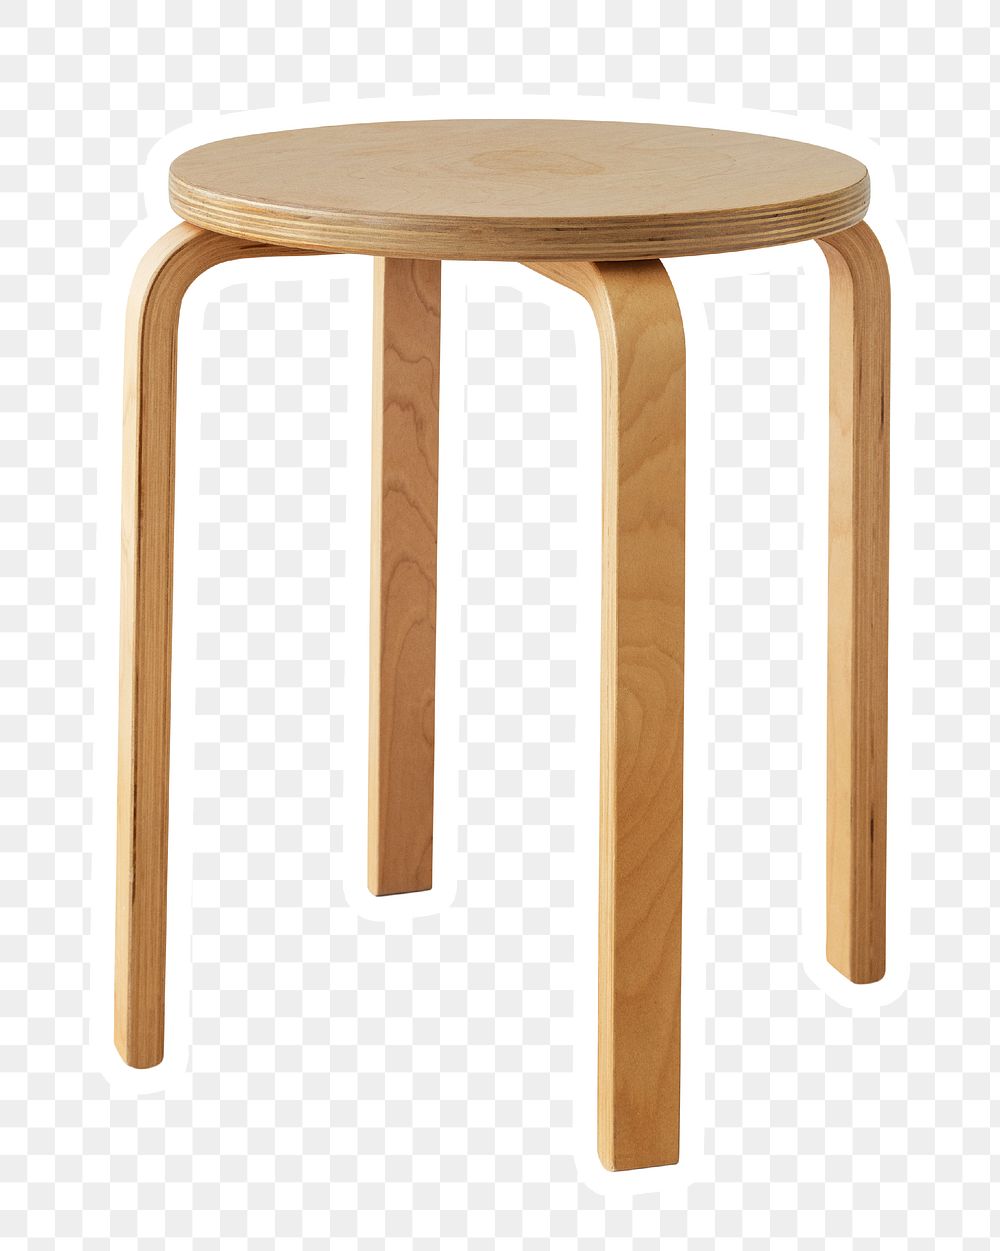 Round wooden stool sticker design element